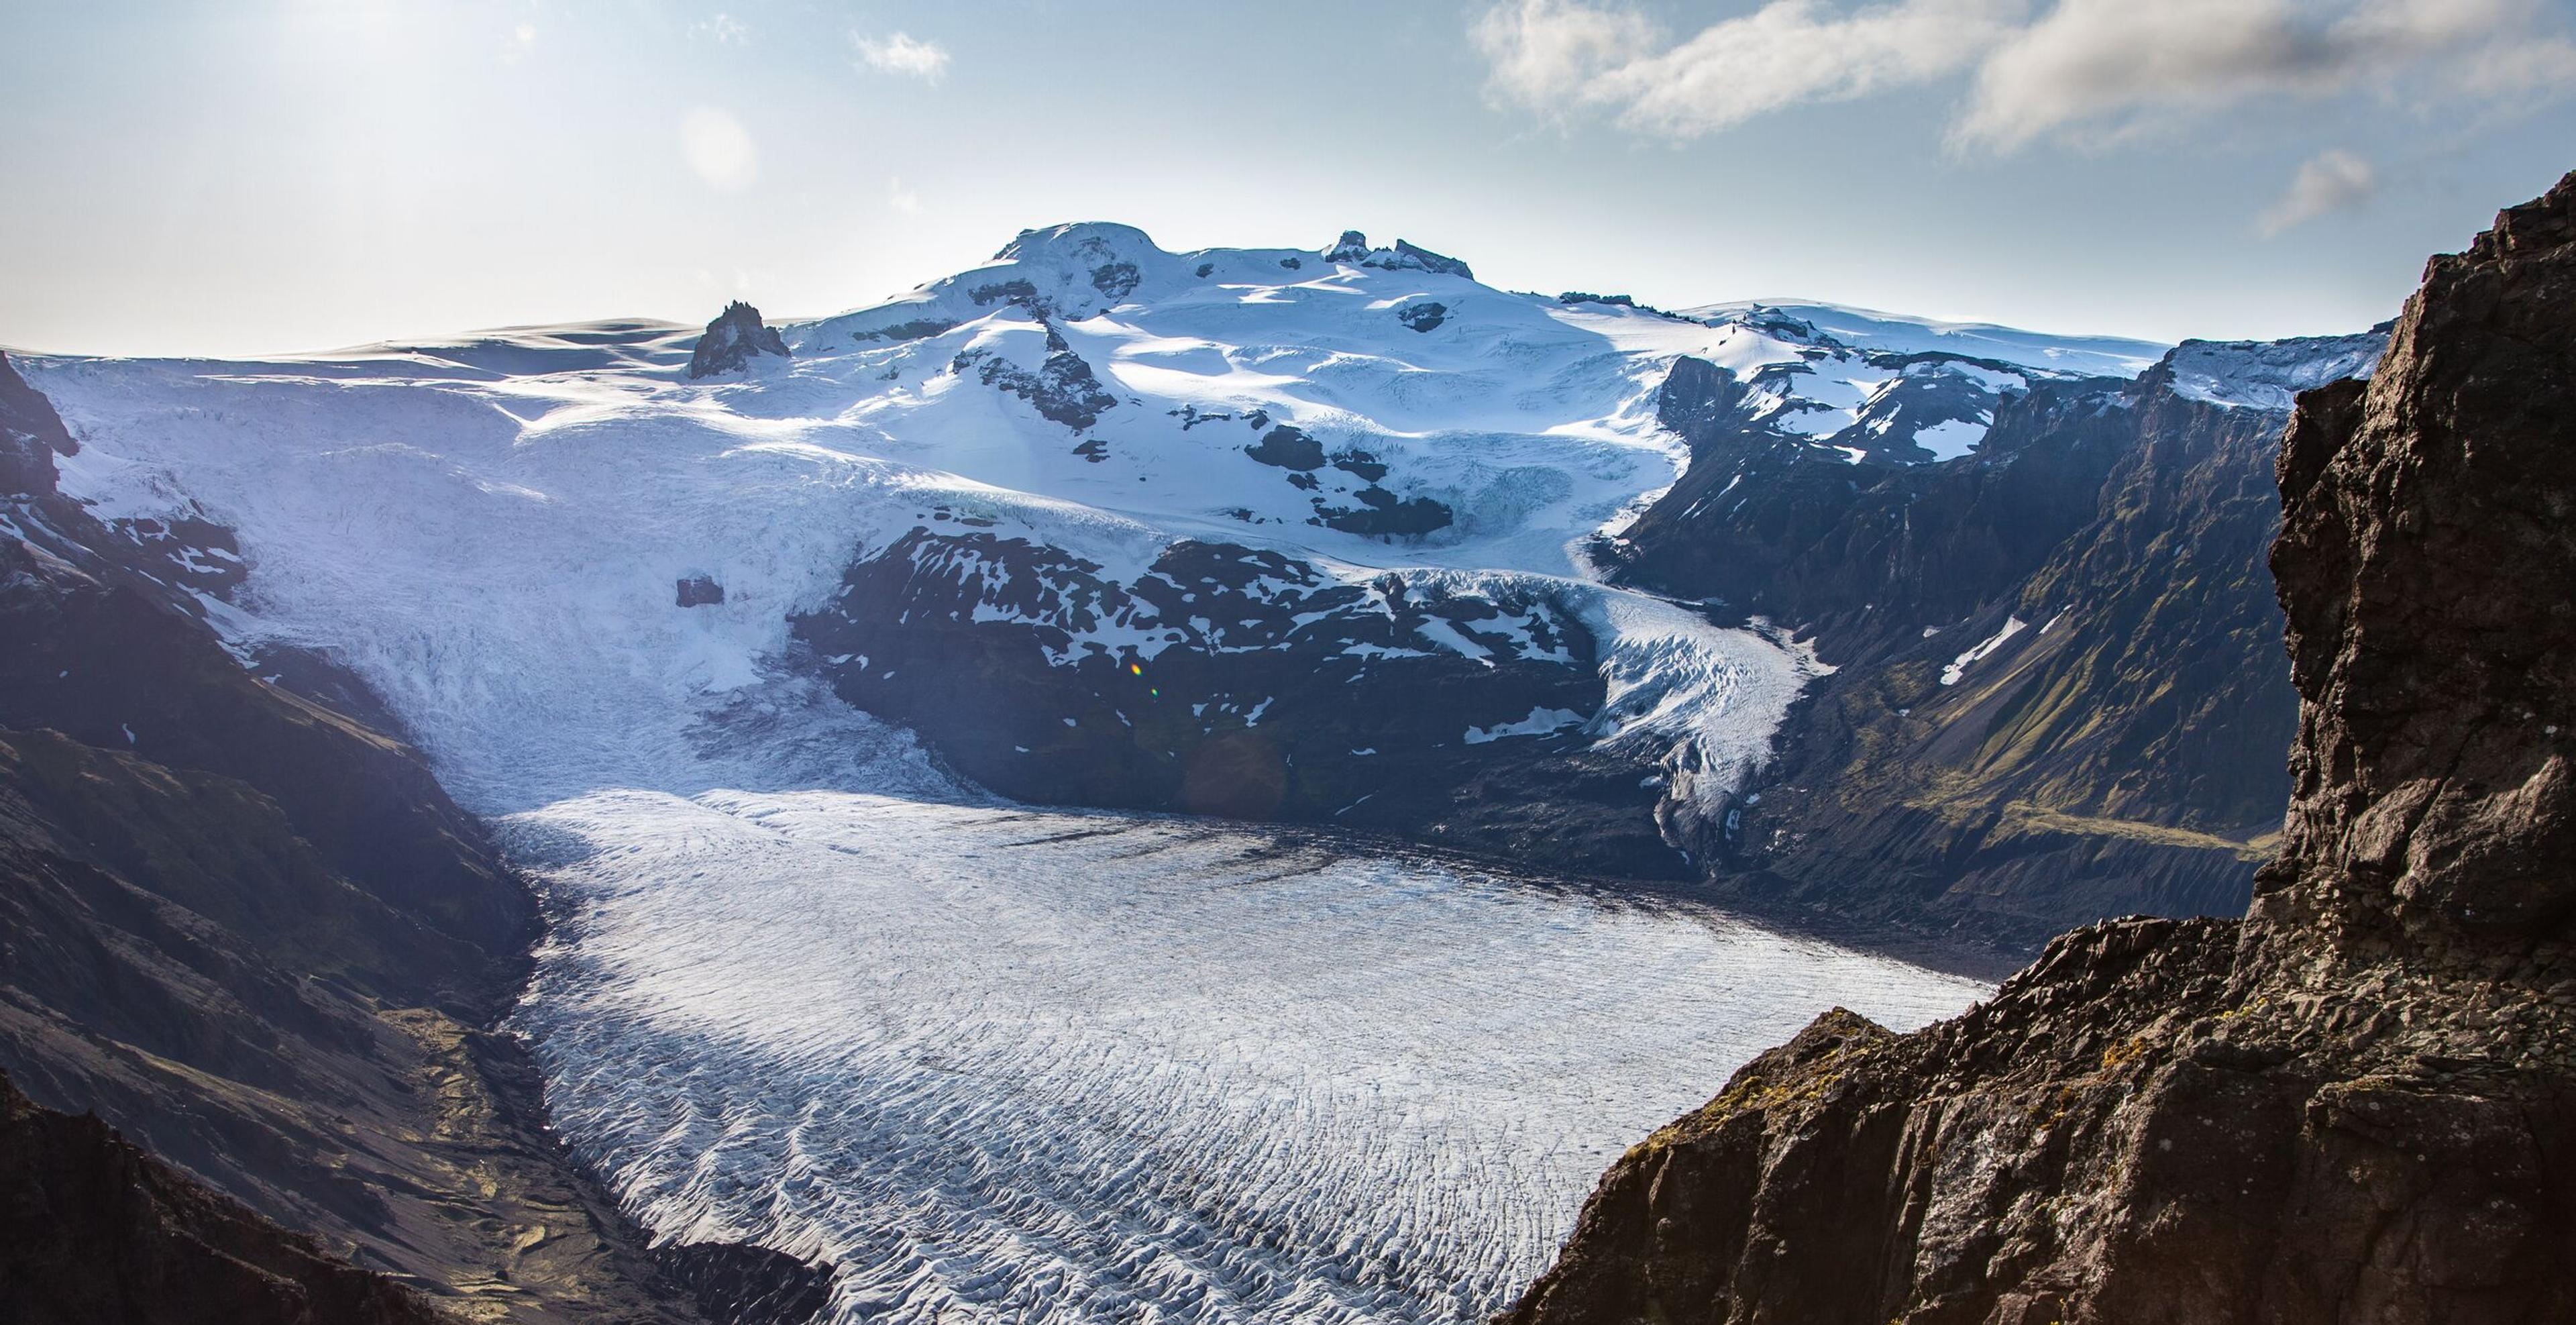 View of Hvannadalshnúkur peak in Vatnajökull with an adjacent outlet glacier.